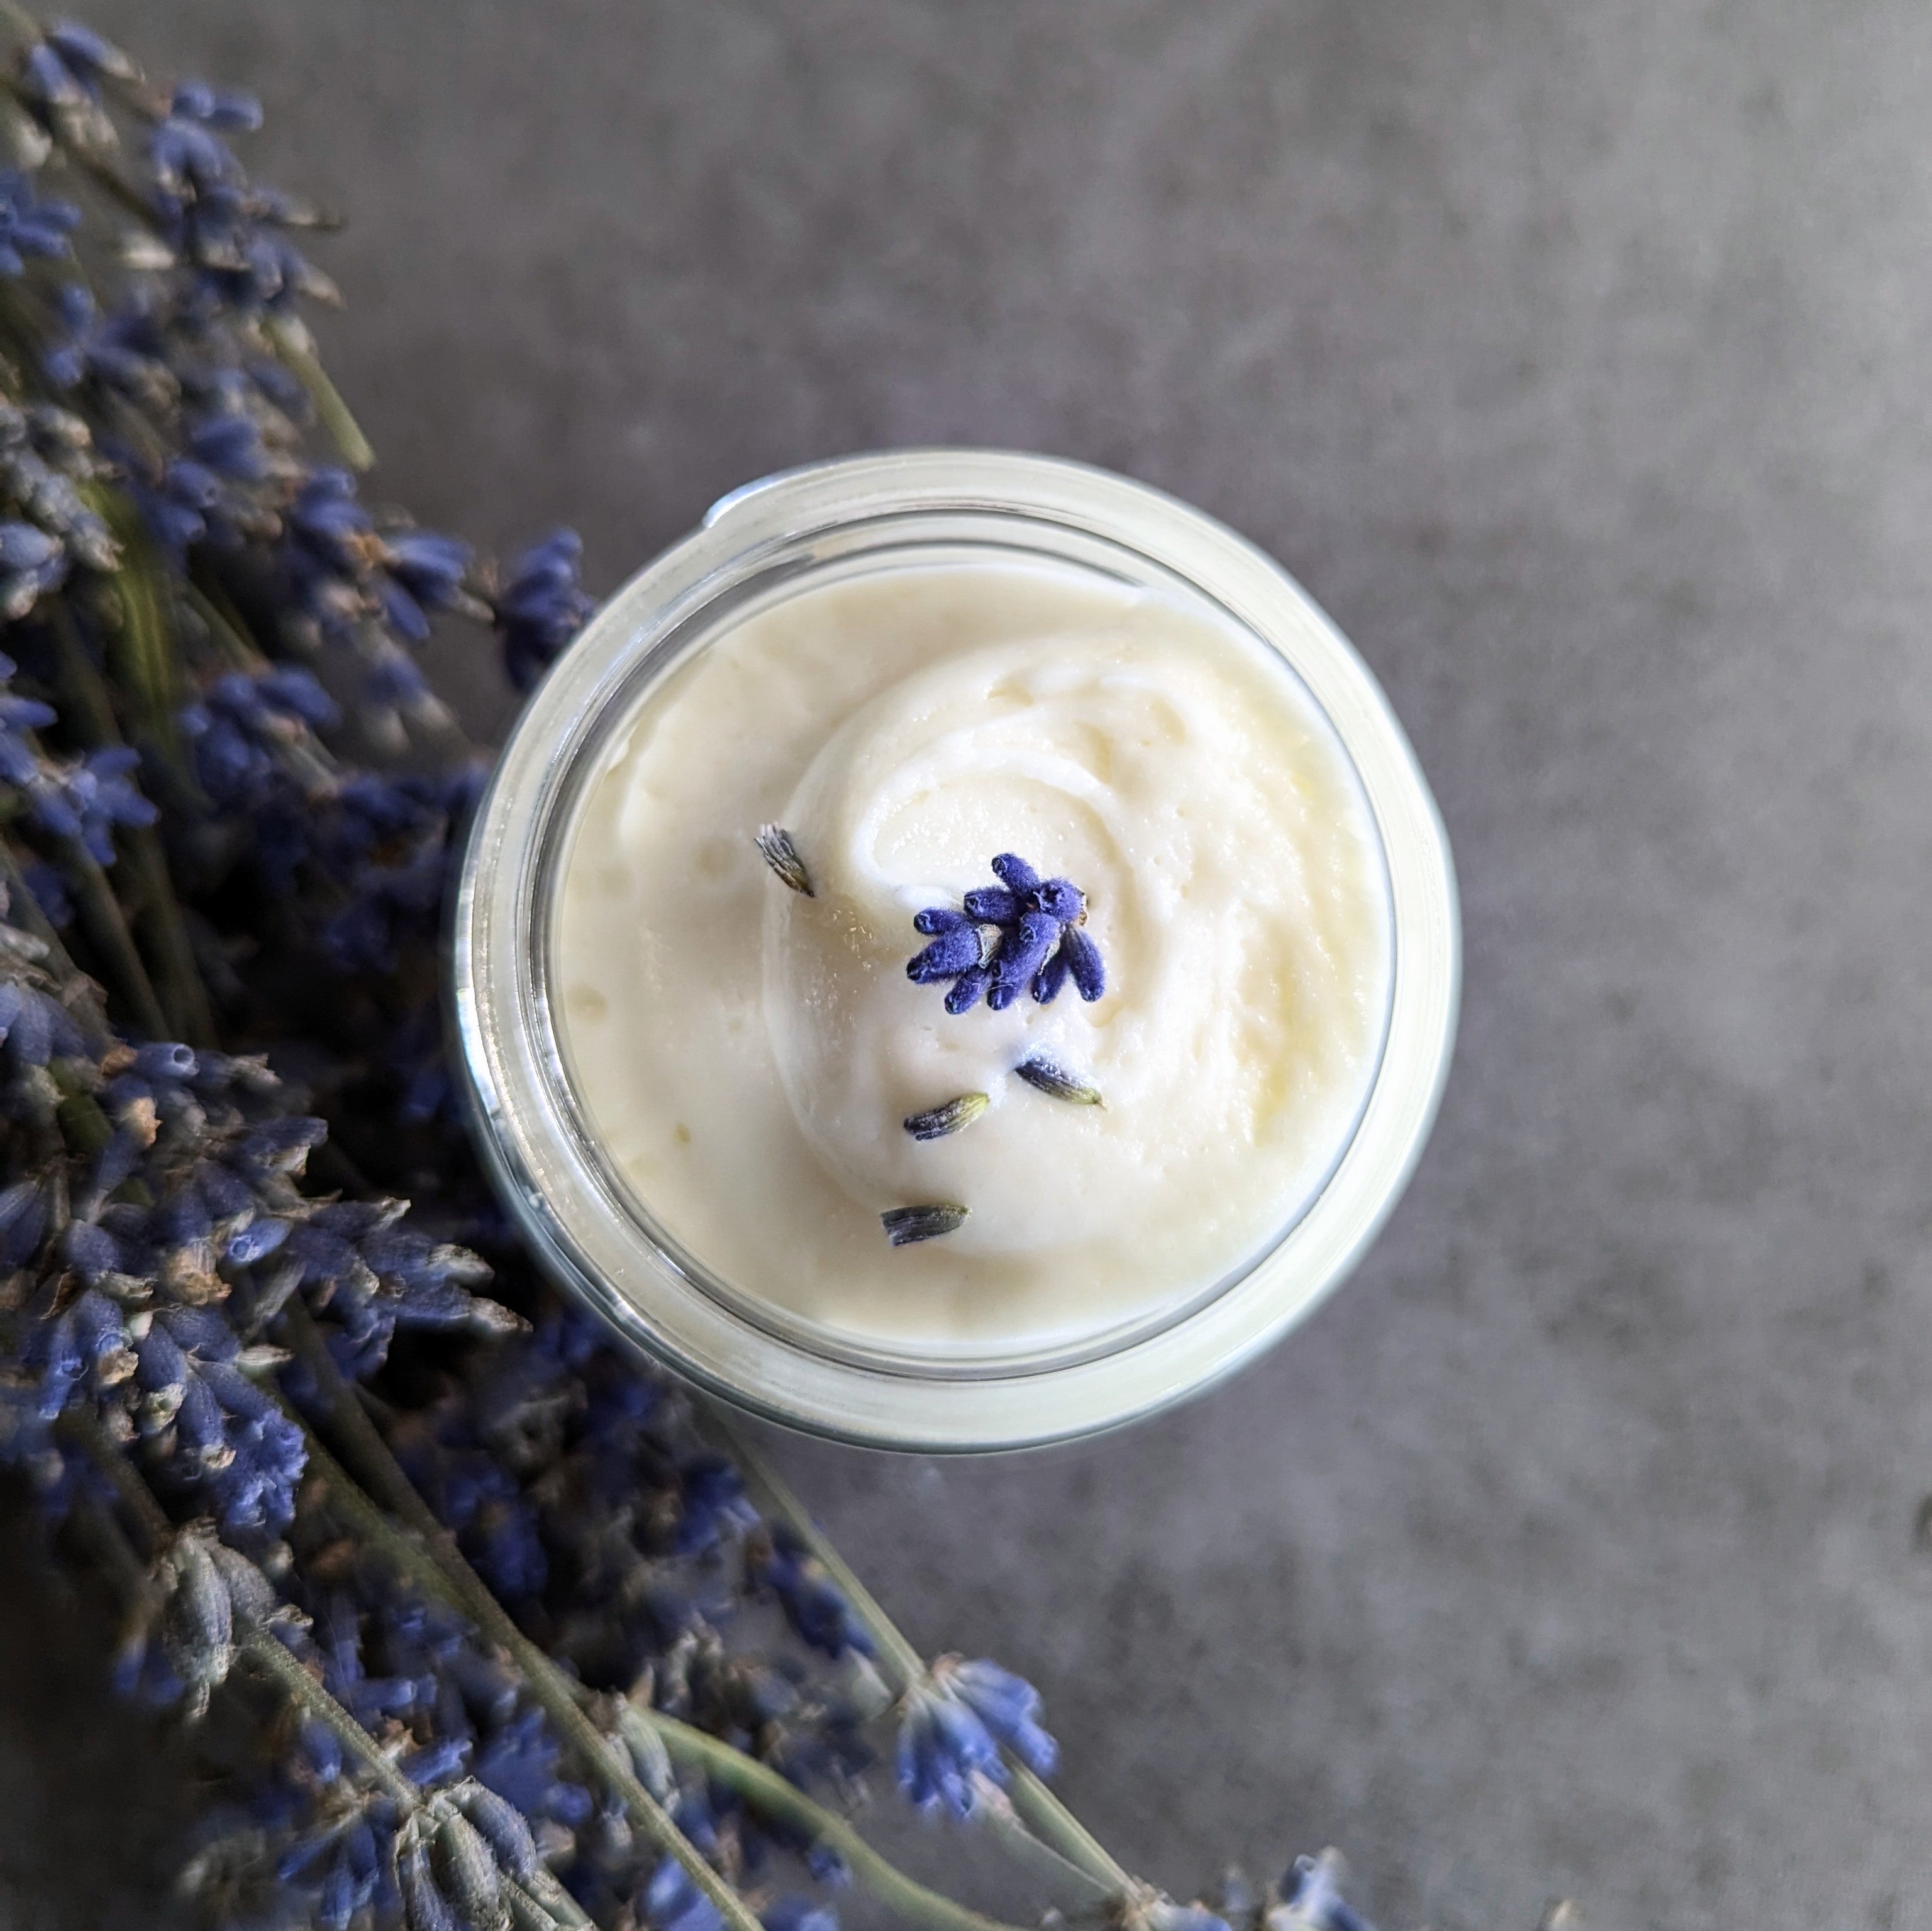 Lavender & Sage | Body Butter